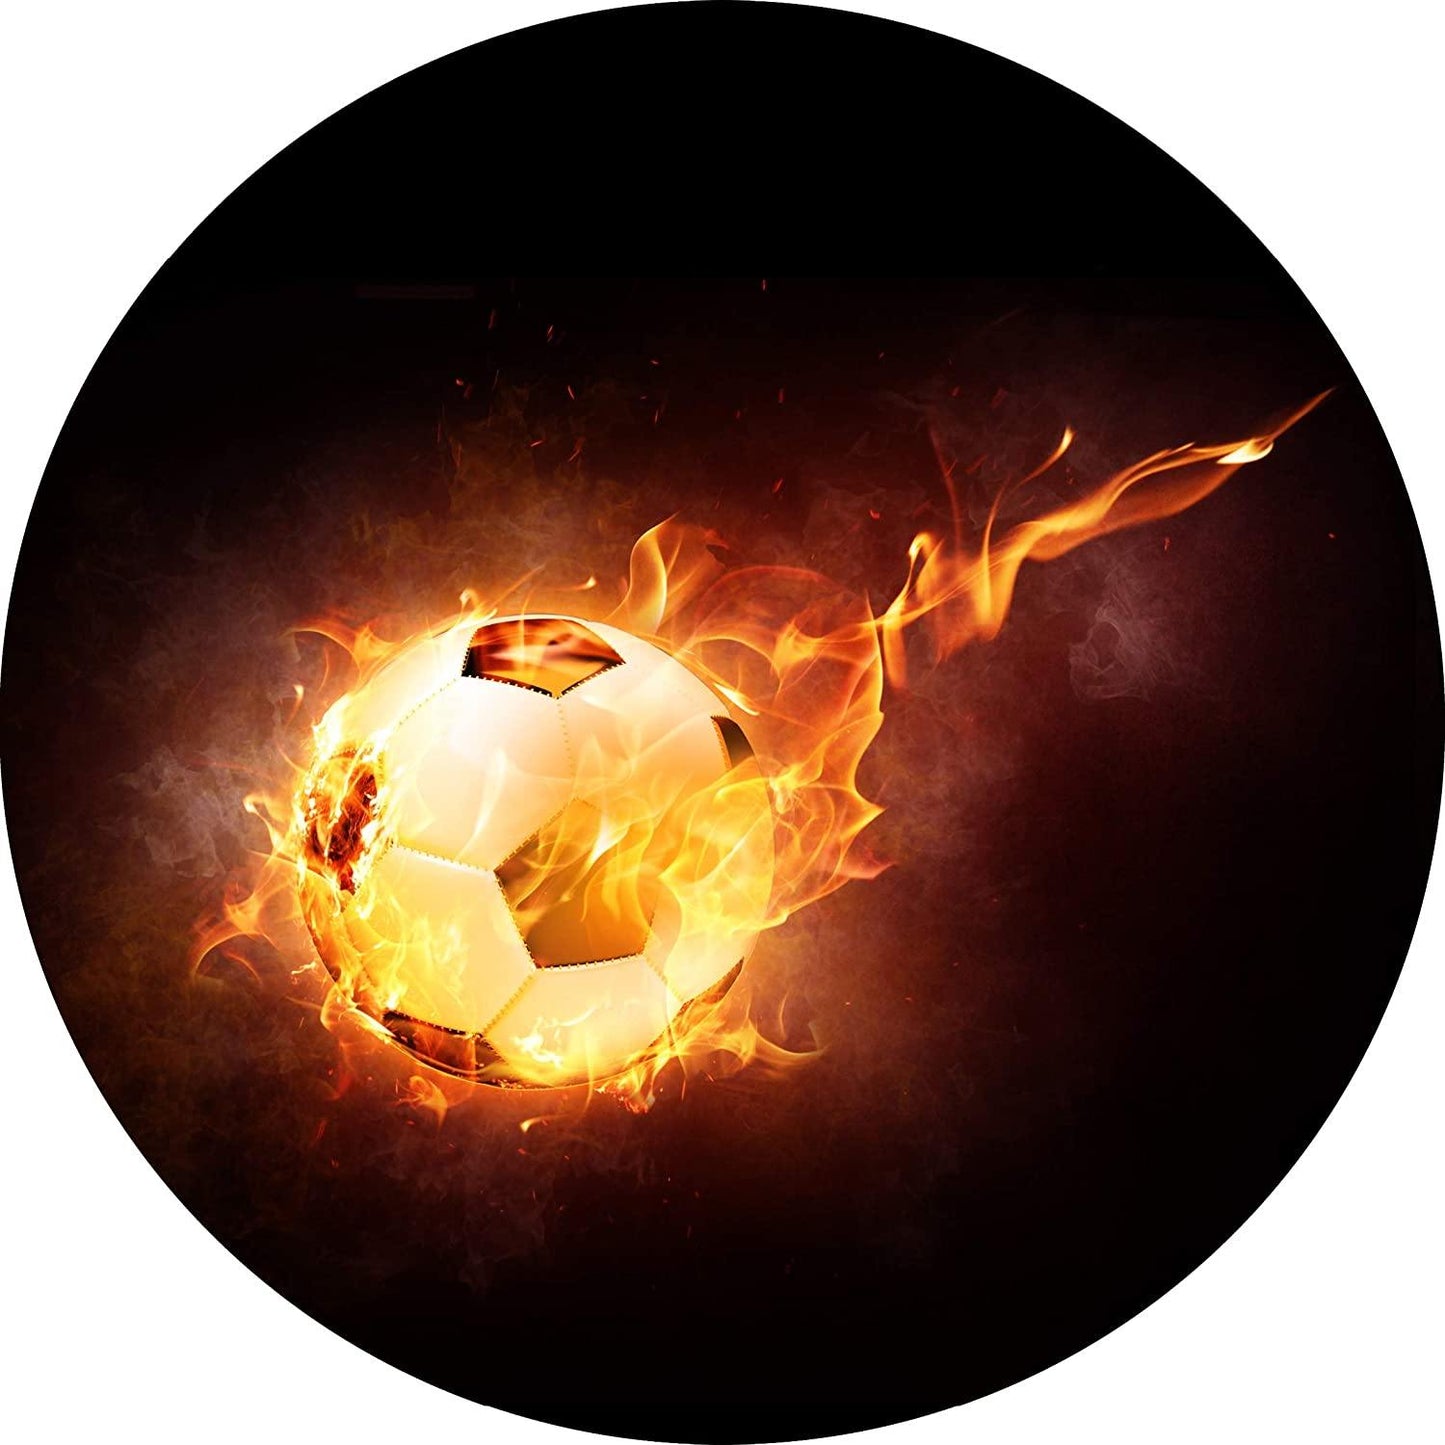 Tortenaufleger Fußball mit brennendem Schweif - Tolle-Tortenaufleger